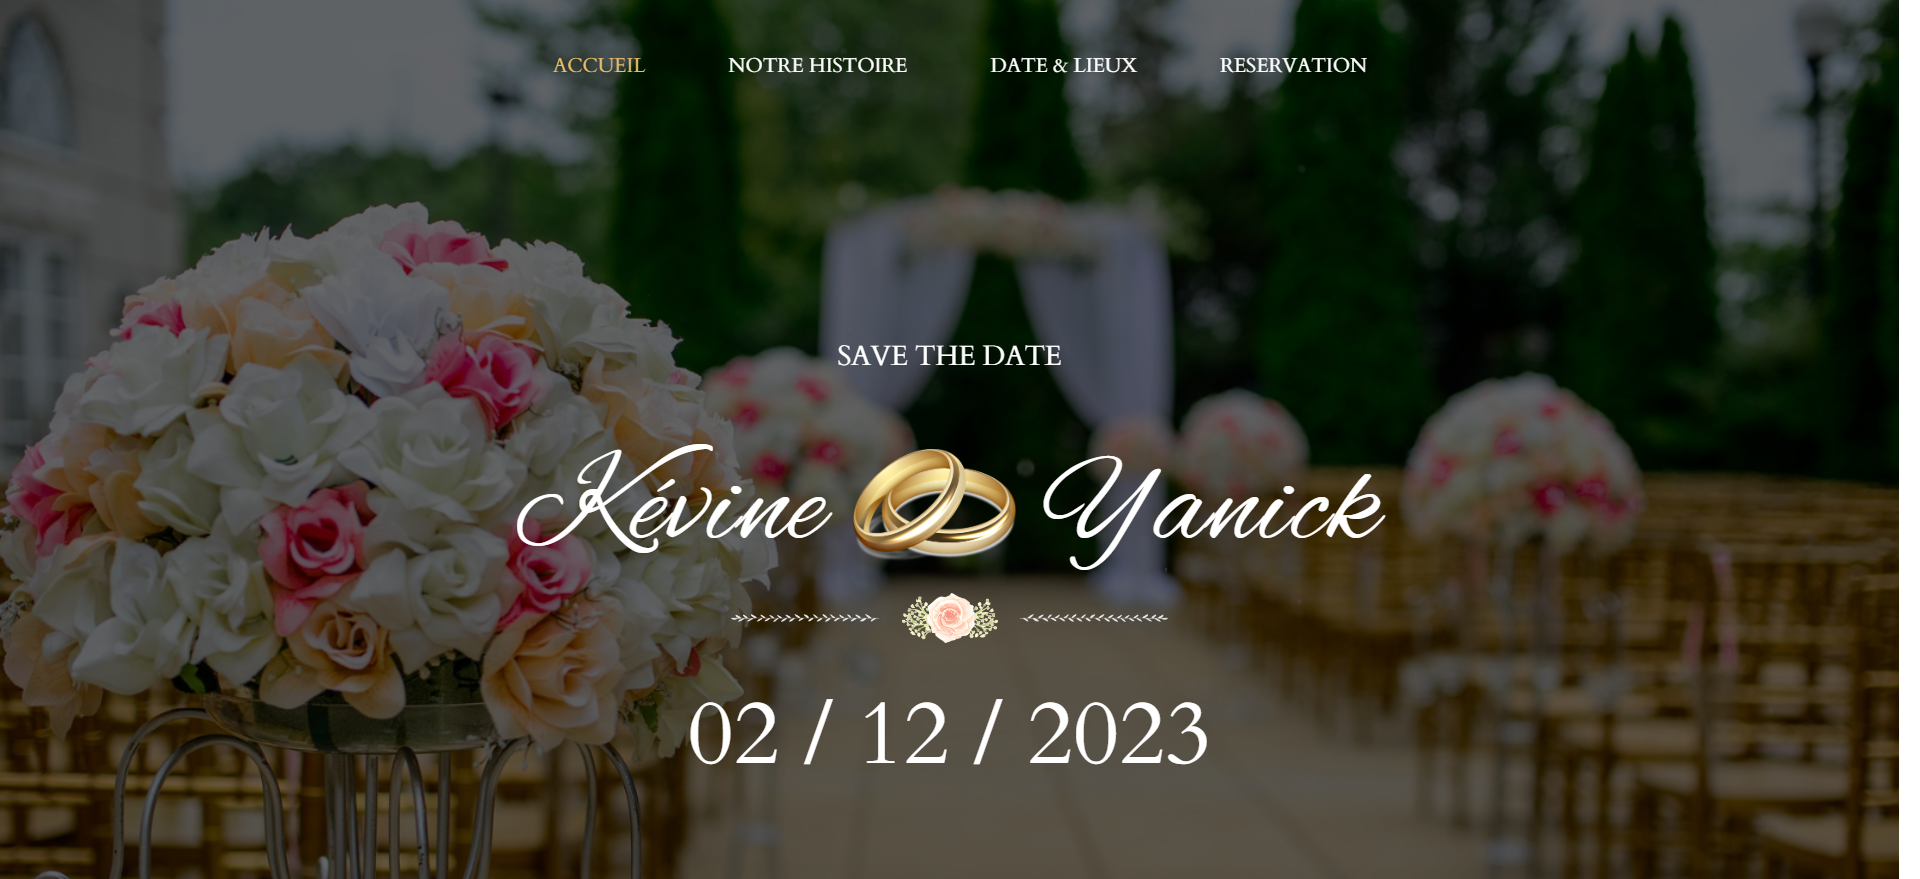 FireShot Capture 882 - Kévine & Yanick - kevine-yanick-mariage.com